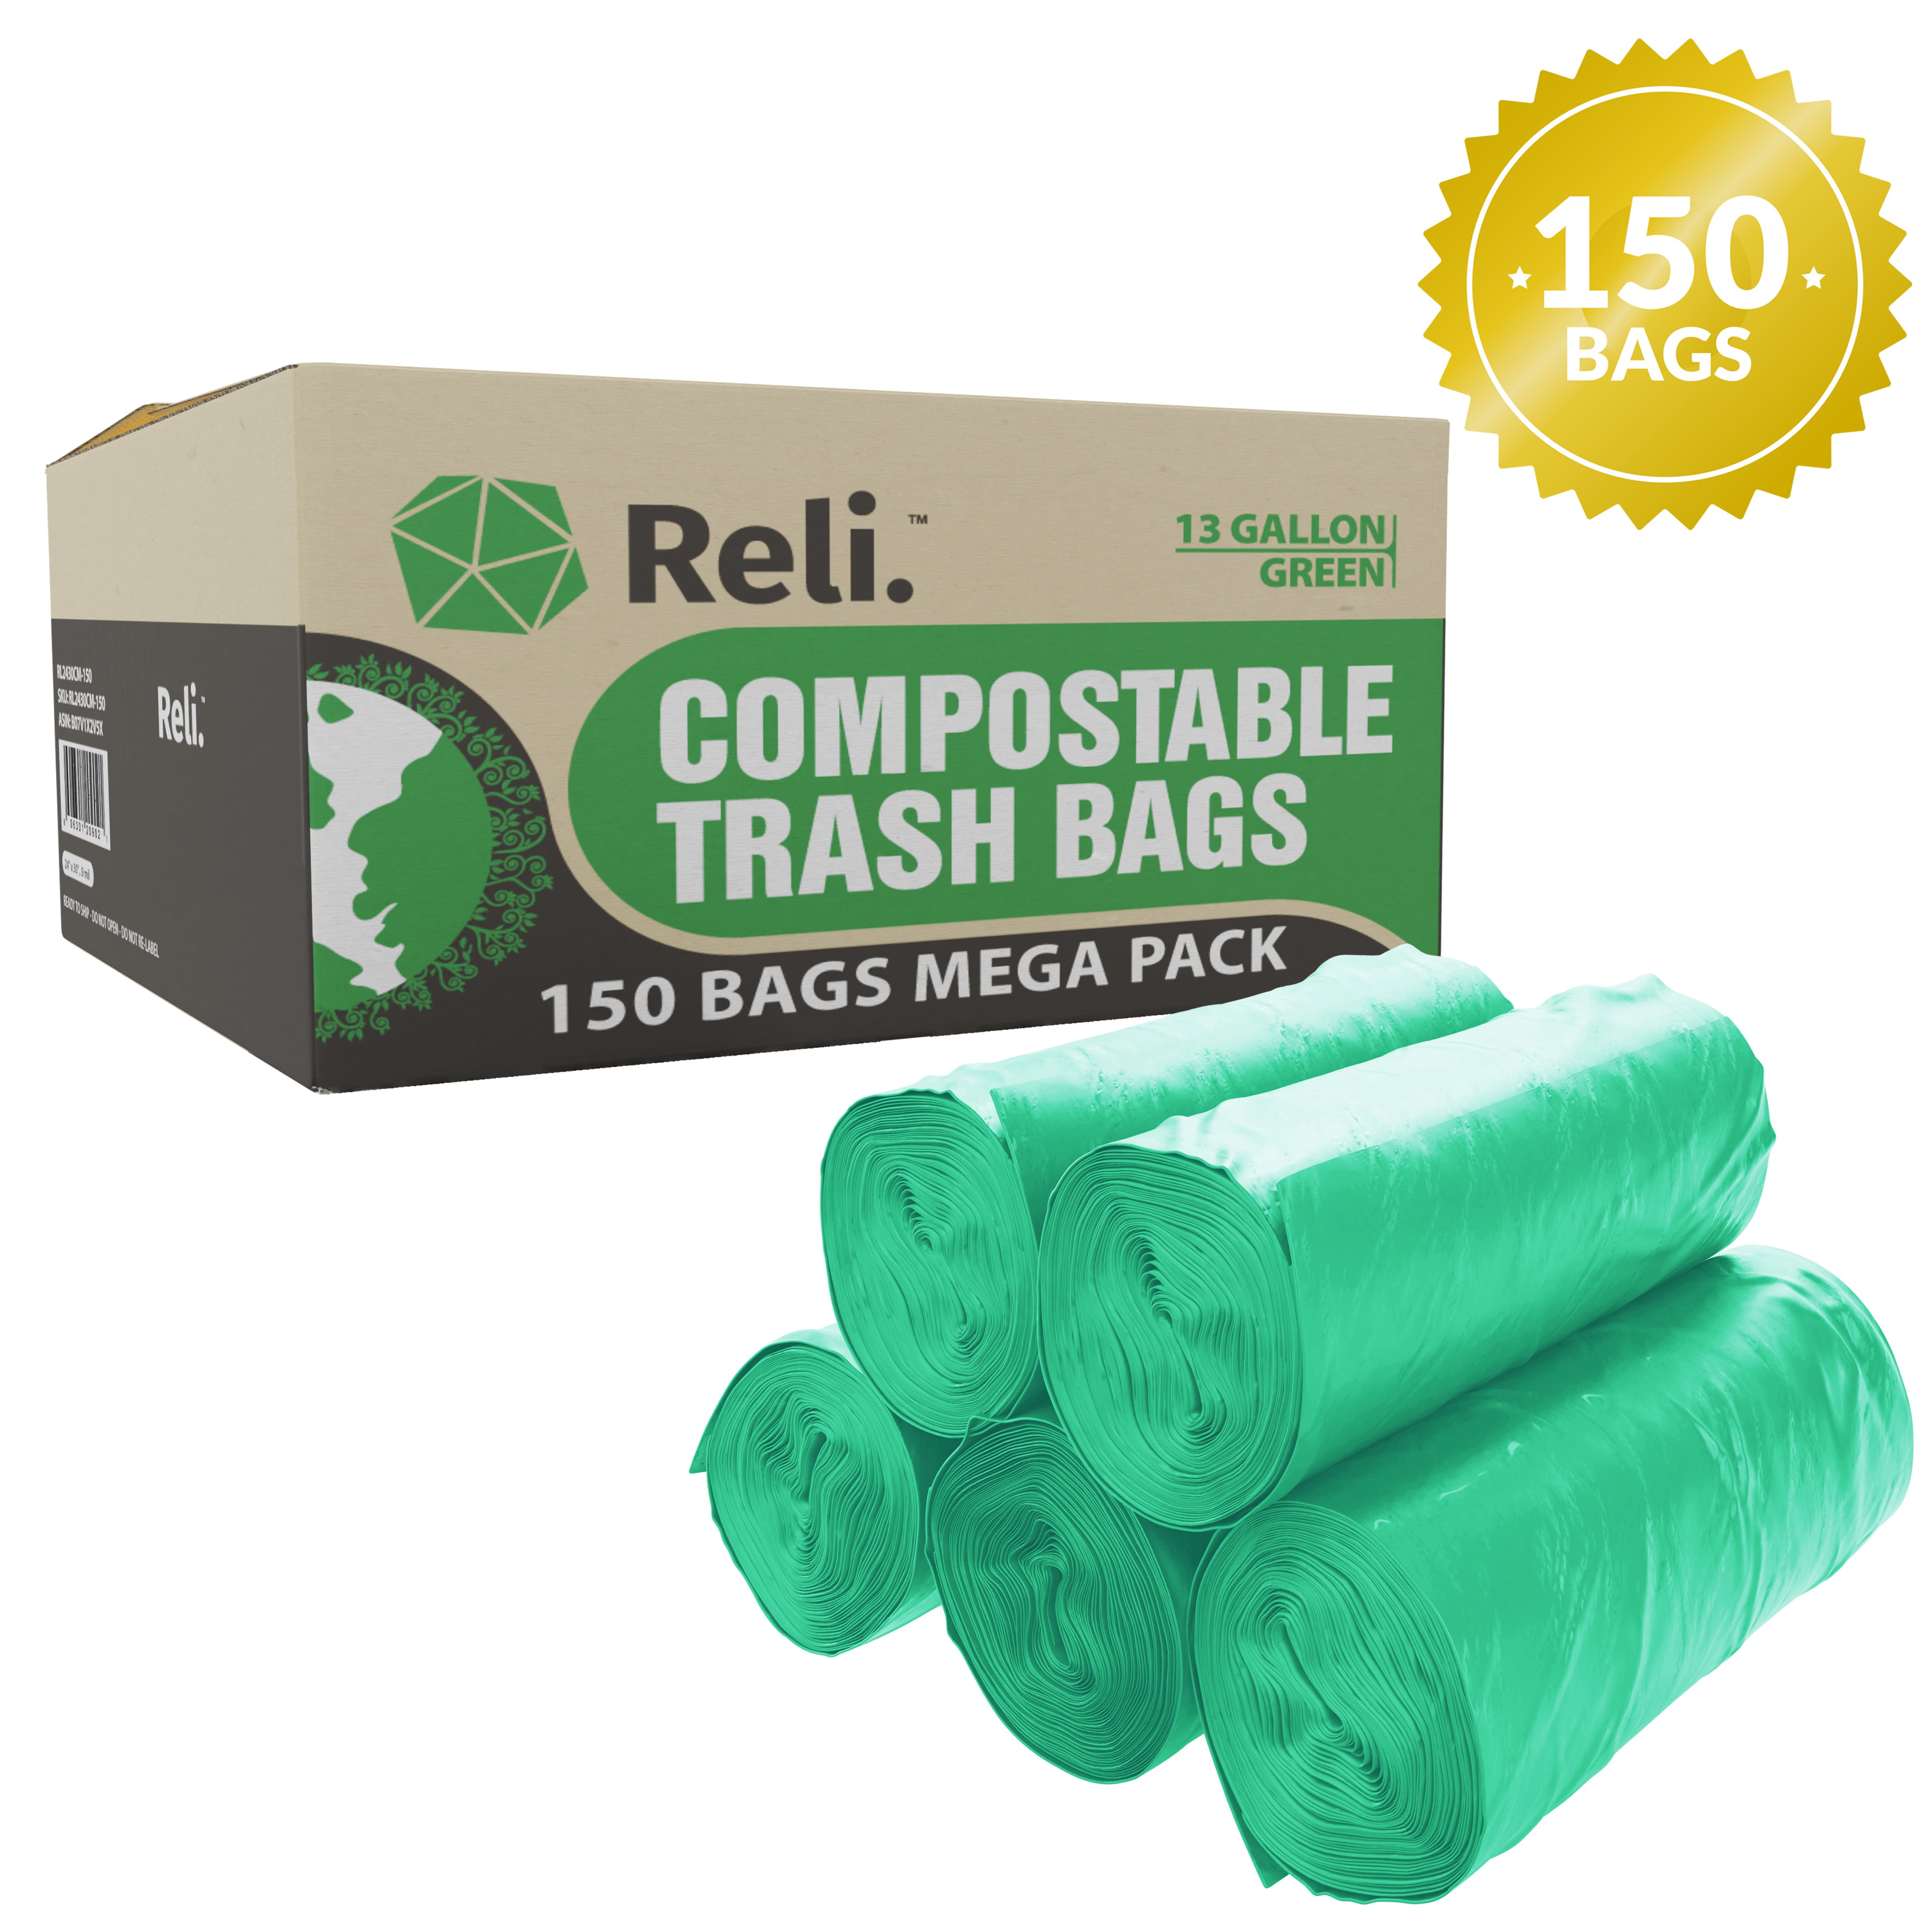 Reli. Compostable 13 Gallon Trash Bags (150 Bags) Green, EcoFriendly